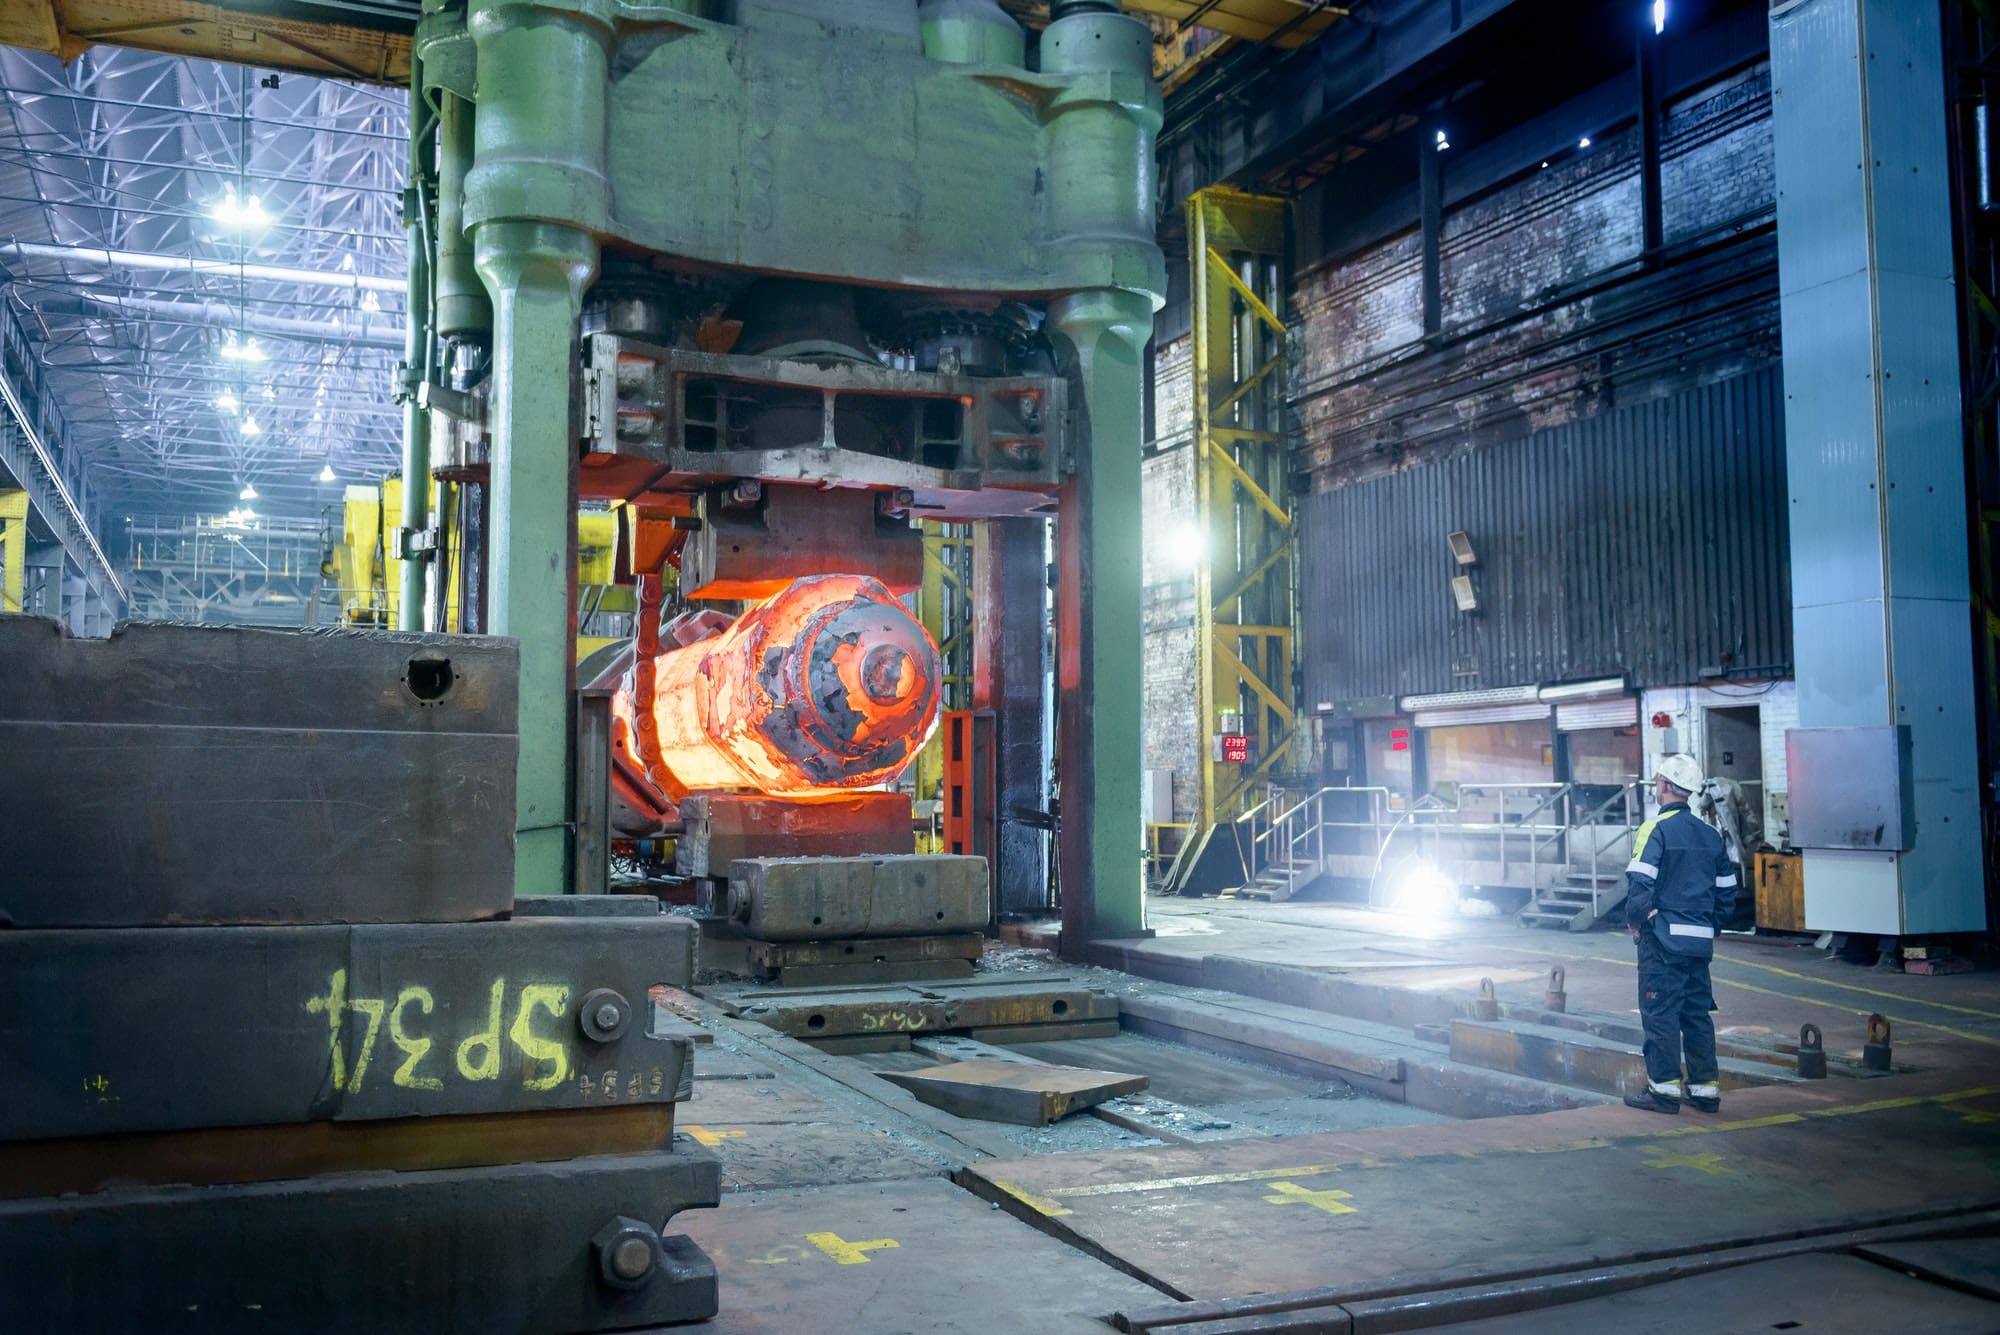 Steelworker inspects hot steel in forging press in steelworks